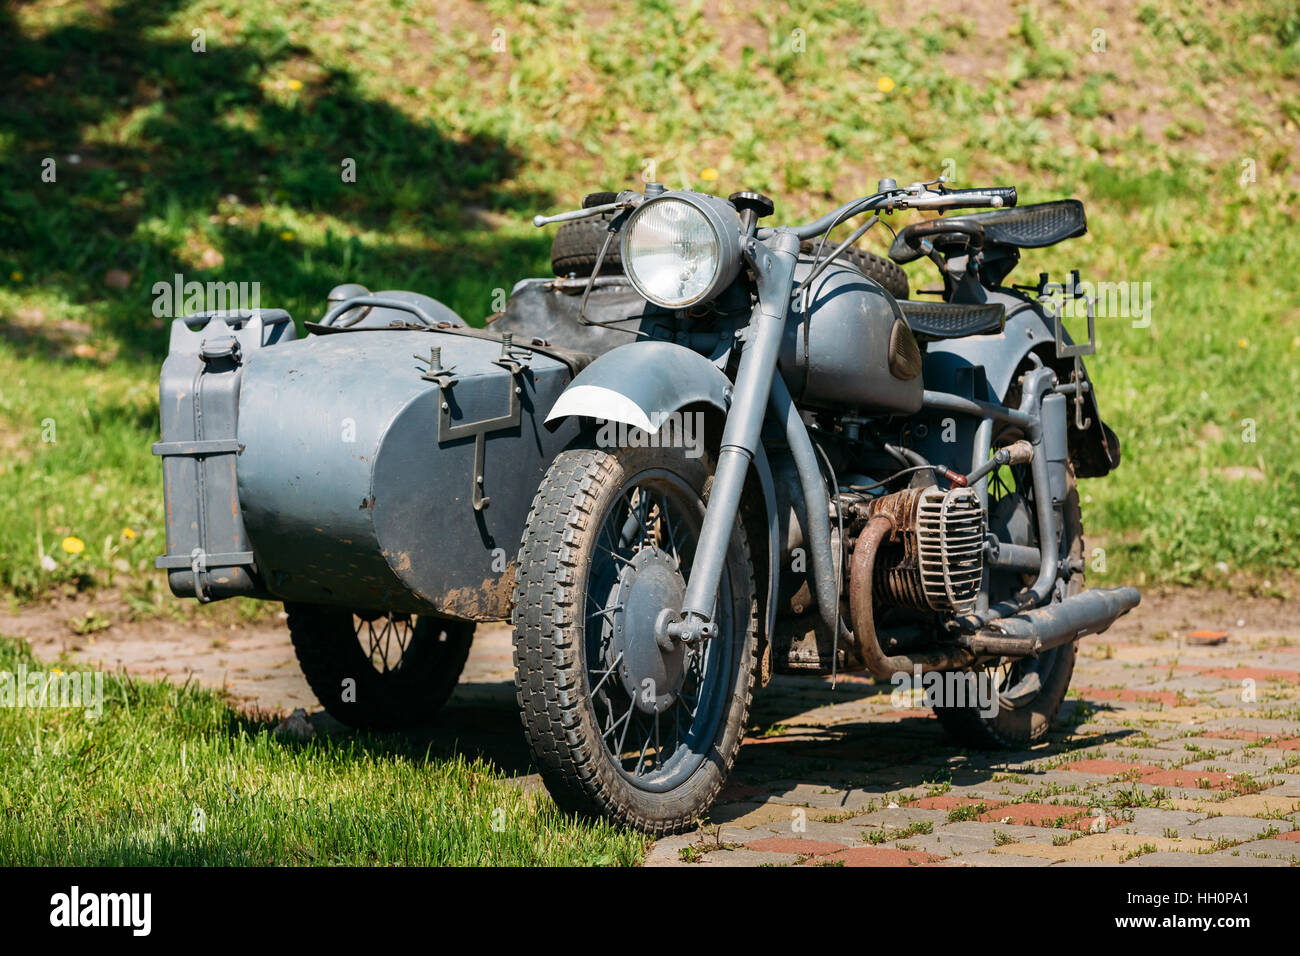 La vieja rareza Tricar, Gris Three-Wheeled motocicleta con un sidecar de las fuerzas alemanas de la II Guerra Mundial el tiempo como una exposición permanente en el Parque soleado de verano. Foto de stock